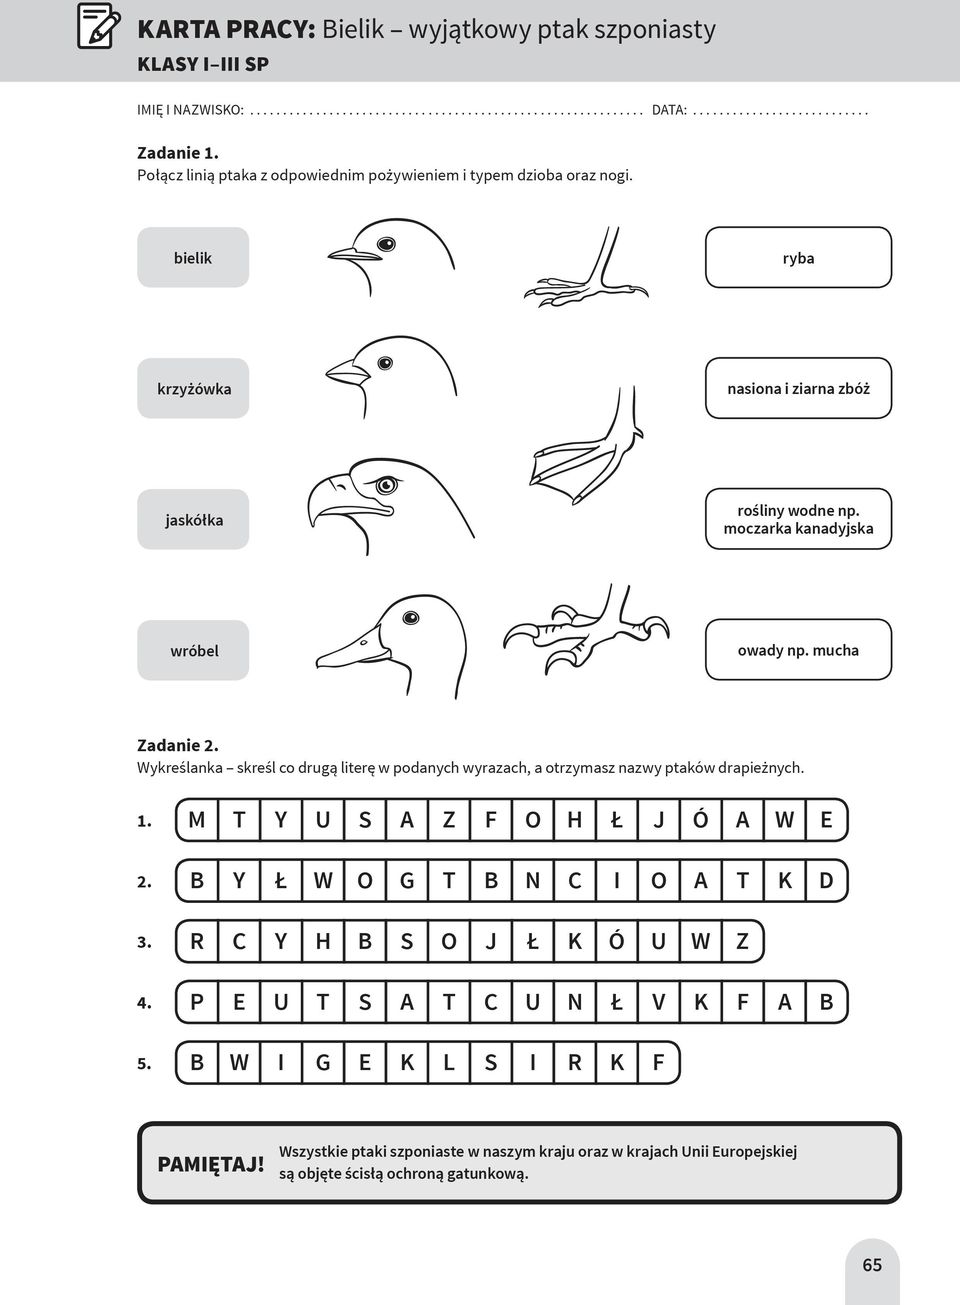 moczarka kanadyjska wróbel owady np. mucha Zadanie 2. Wykreślanka skreśl co drugą literę w podanych wyrazach, a otrzymasz nazwy ptaków drapieżnych. 1.